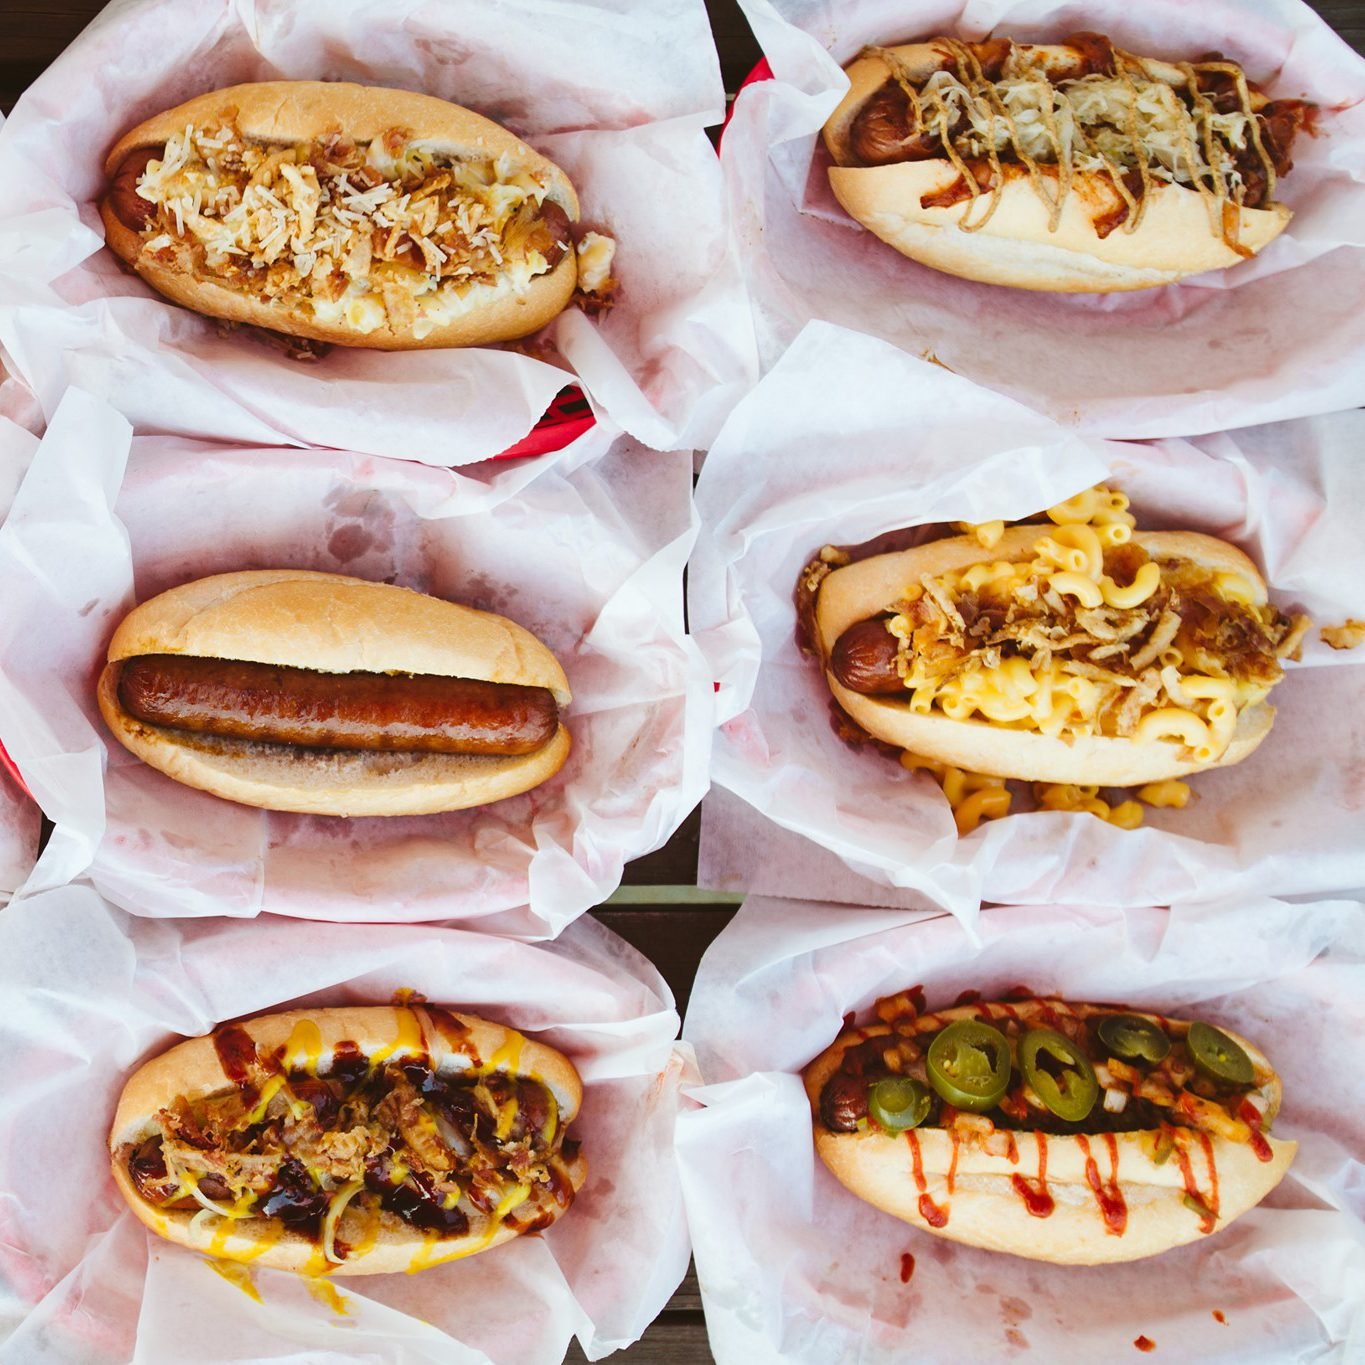 https://www.tasteofhome.com/wp-content/uploads/2019/06/Steves-Hot-Dogs-St.-Louis.jpg